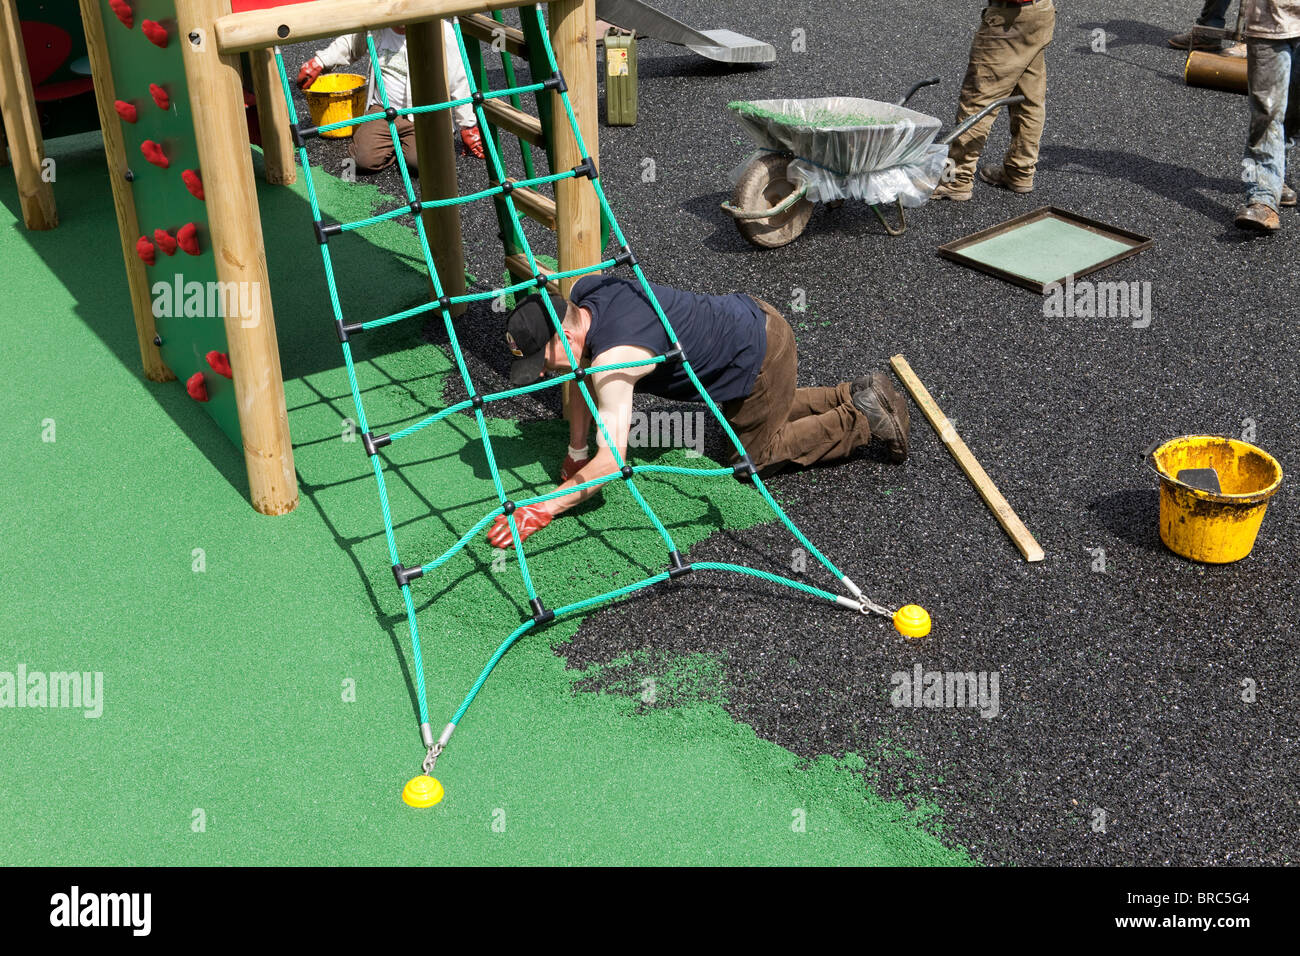 La sécurité des travailleurs La pose d'une surface sur une aire de jeux pour enfants dans le village de Dent, Cumbria. Banque D'Images